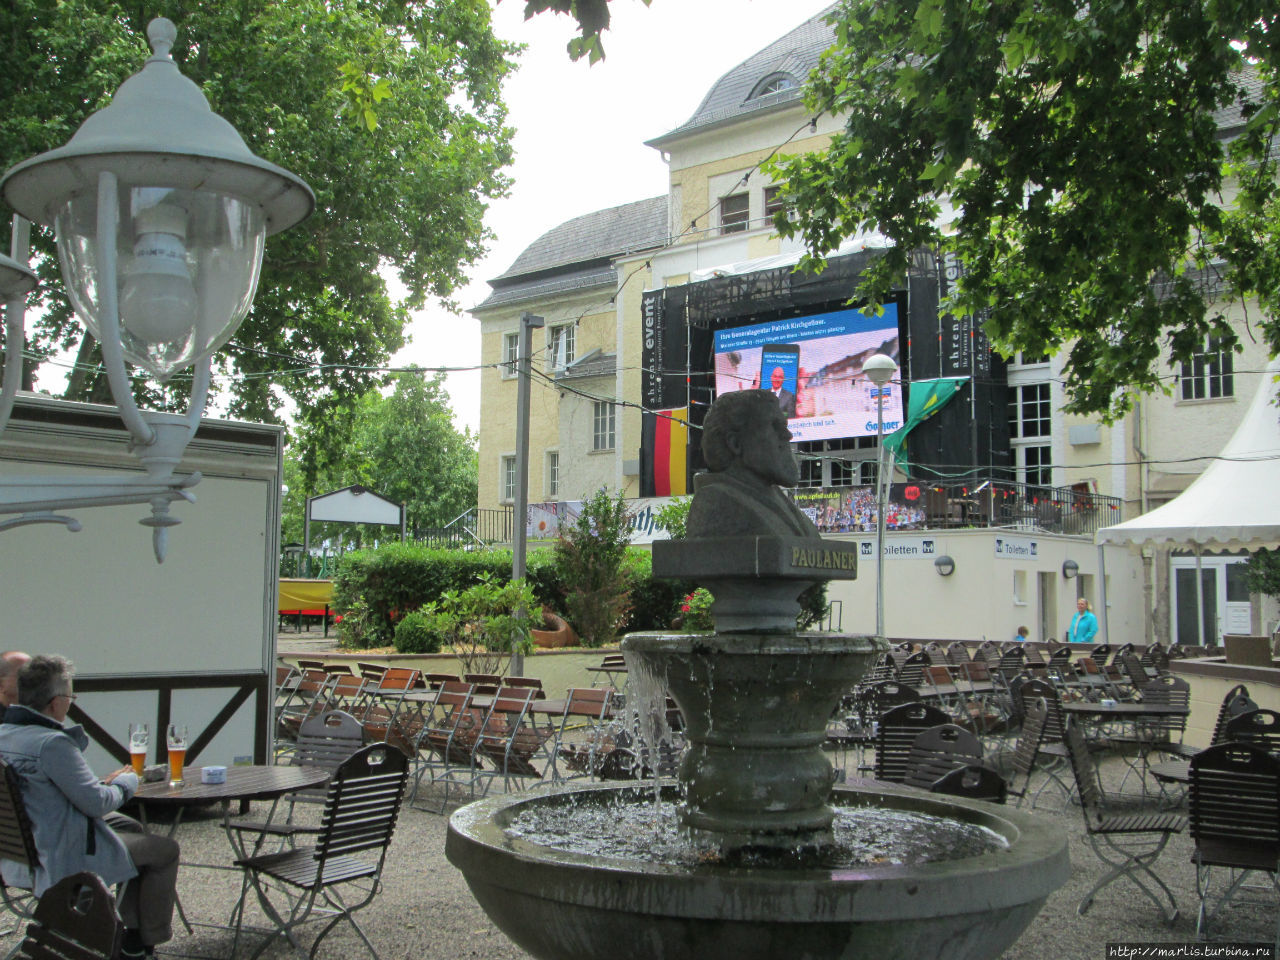 ЧМ 2014 — подготовка к просмотру футбола Бинген-на-Рейне, Германия